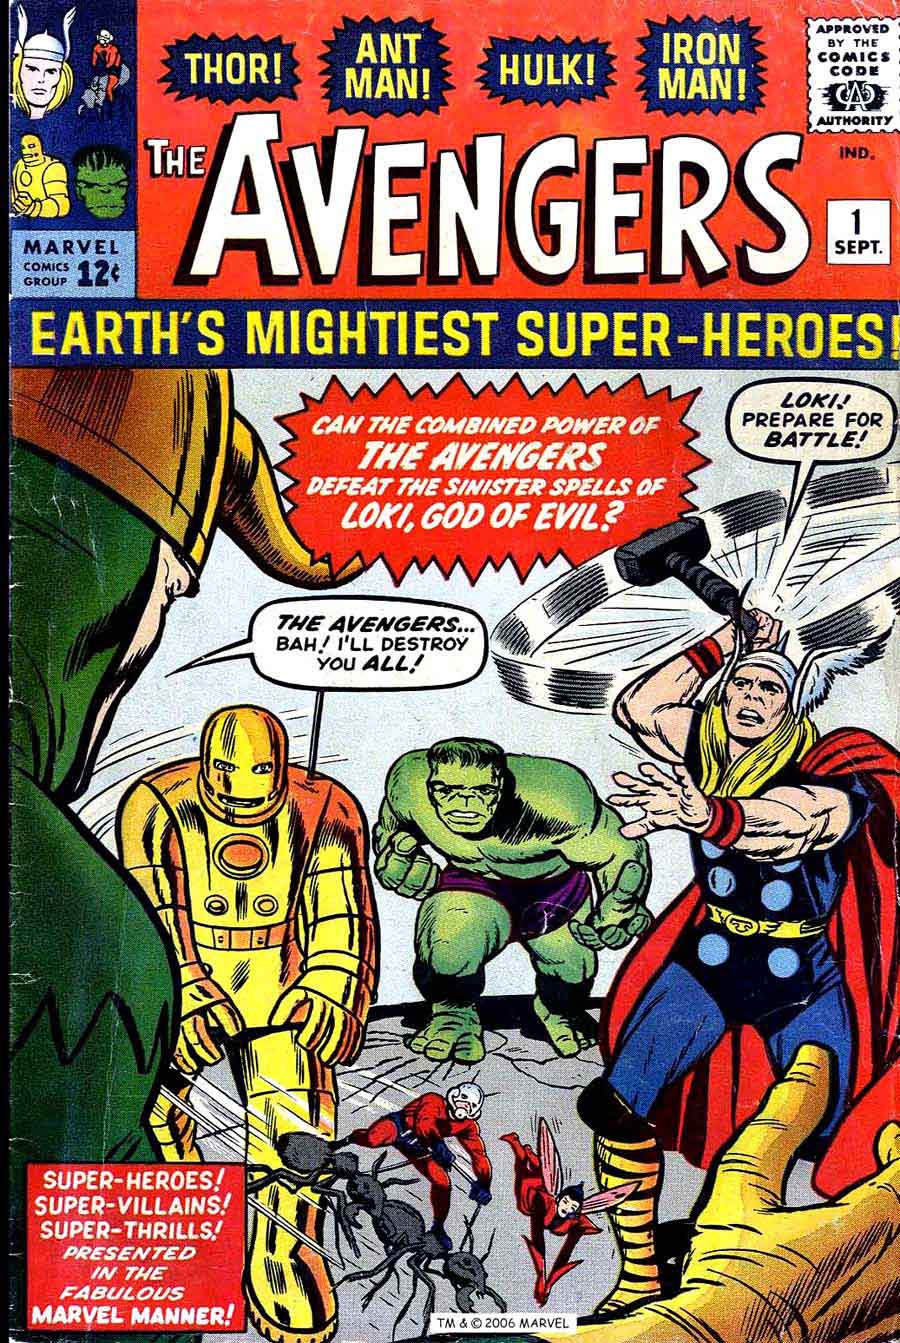 Avengers v1 #1 1963 marvel comic book cover art by Jack Kirby